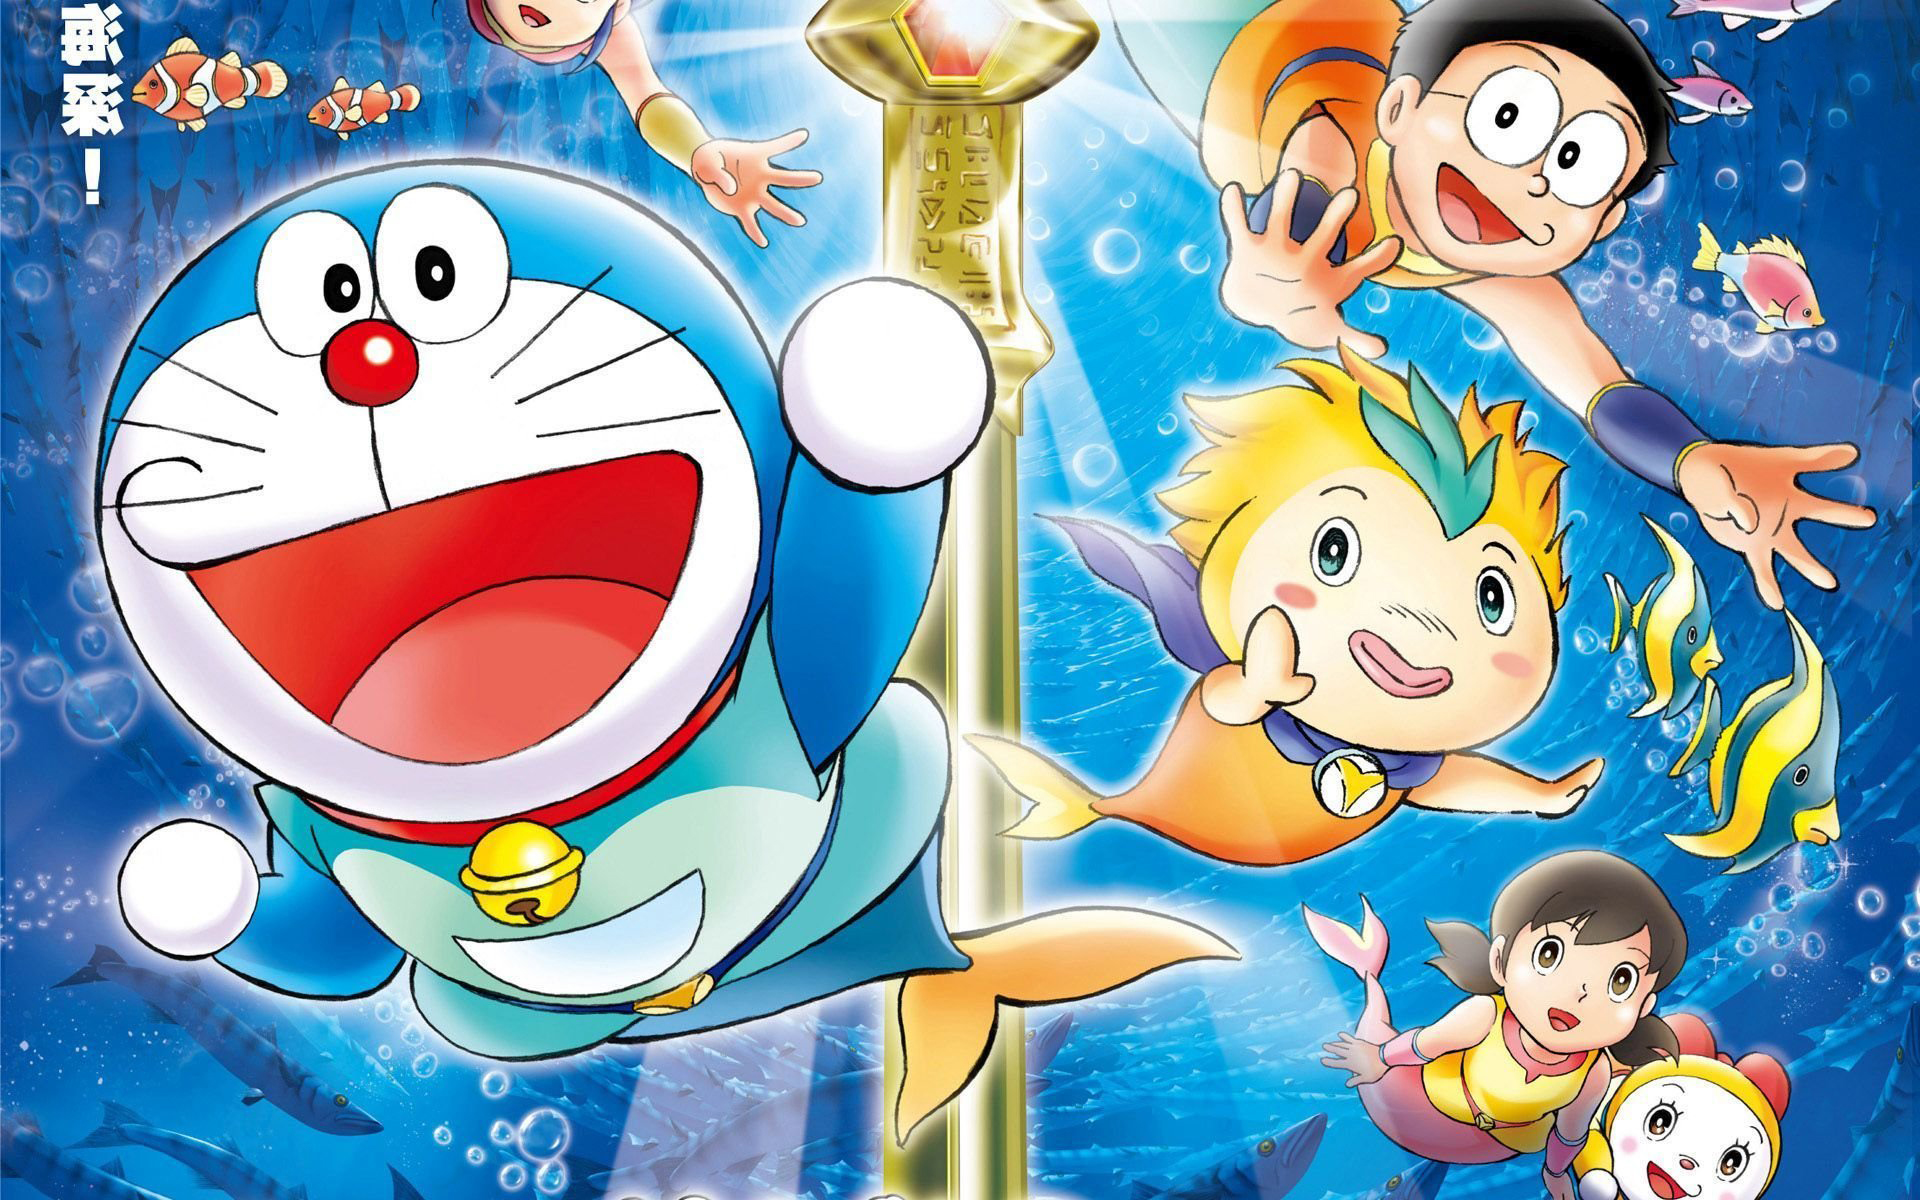 Khám phá động vật máy Doraemon với hình nền đẹp mắt này! Sự kết hợp giữa sự đáng yêu của Doraemon và những công nghệ tuyệt vời sẽ khiến bạn cảm thấy thích thú. Các hình ảnh sinh động và tươi sáng sẽ đem lại không gian mới mẻ cho màn hình của bạn.